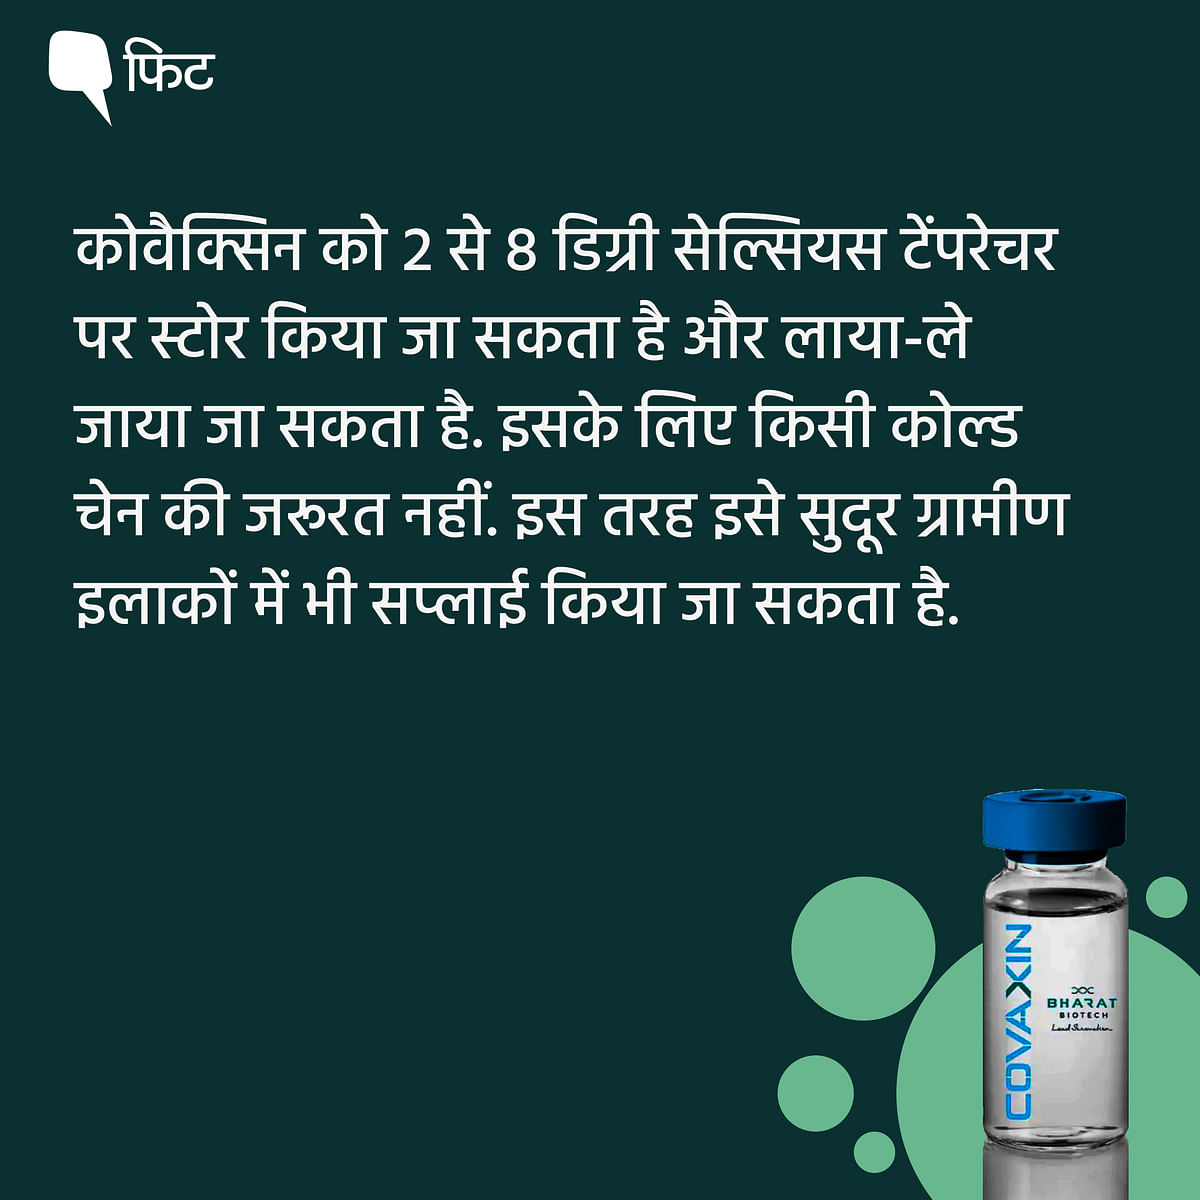 कोवैक्सीन भारत का पहला पूर्ण विकसित और उत्पादित COVID-19 वैक्सीन है, जिसे भारत बायोटेक ने बनाया है